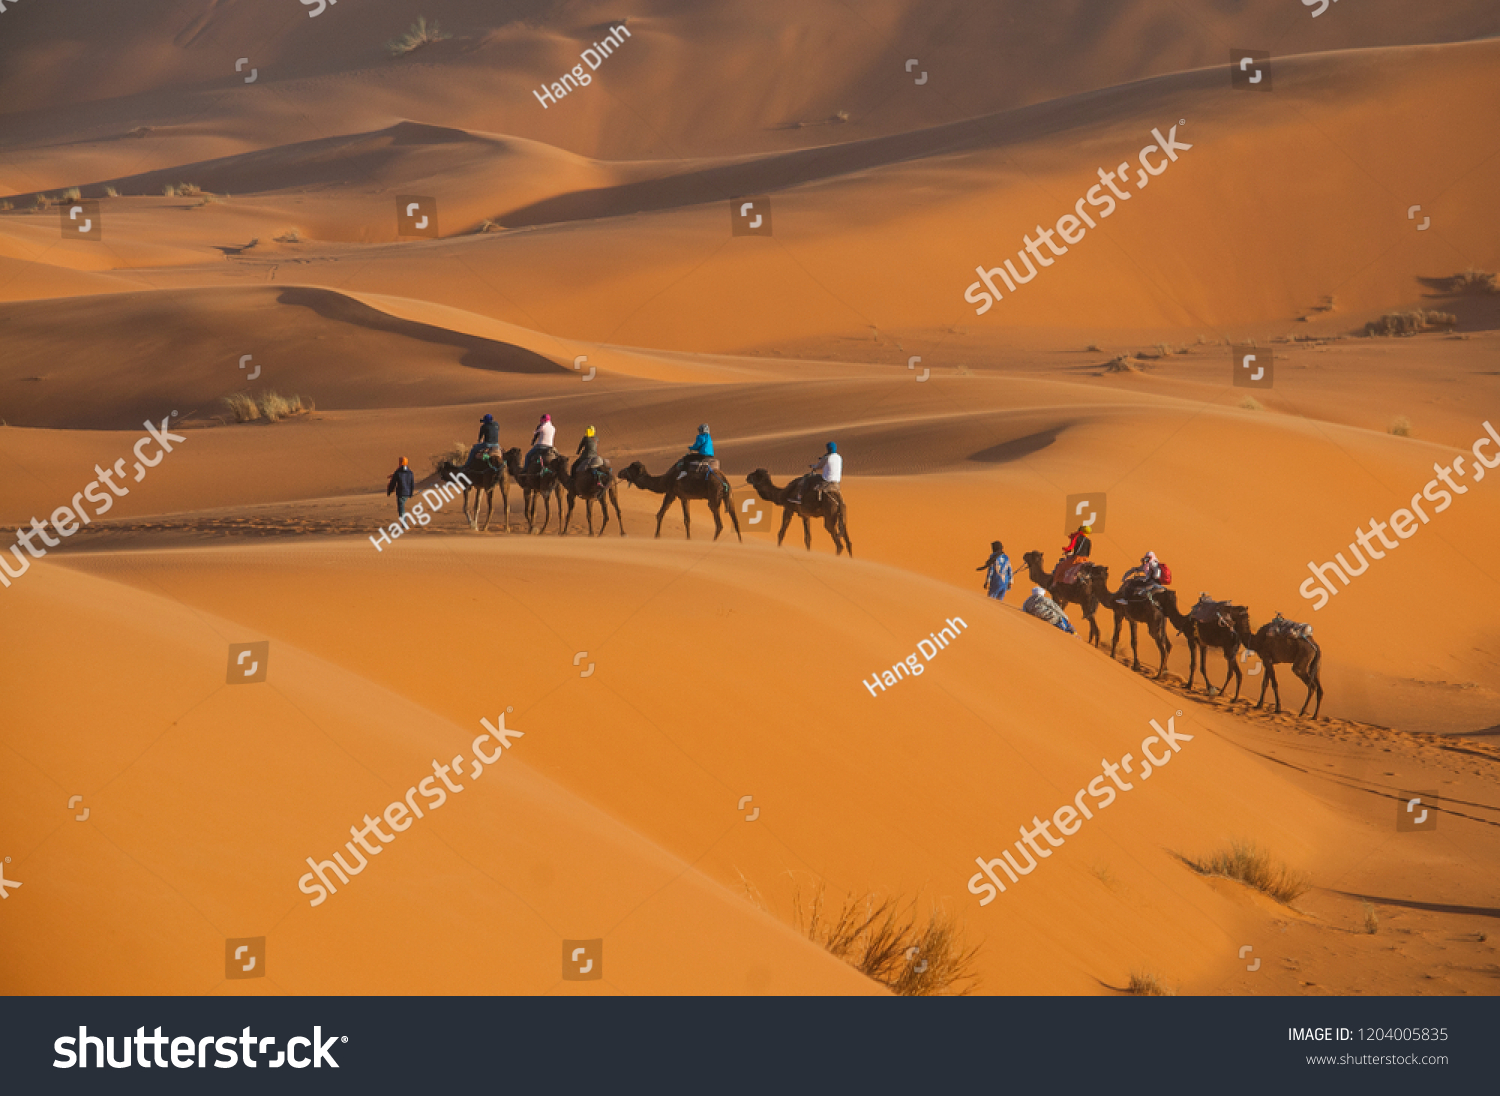 Tourists are riding camels through Sahara desert.  #1204005835